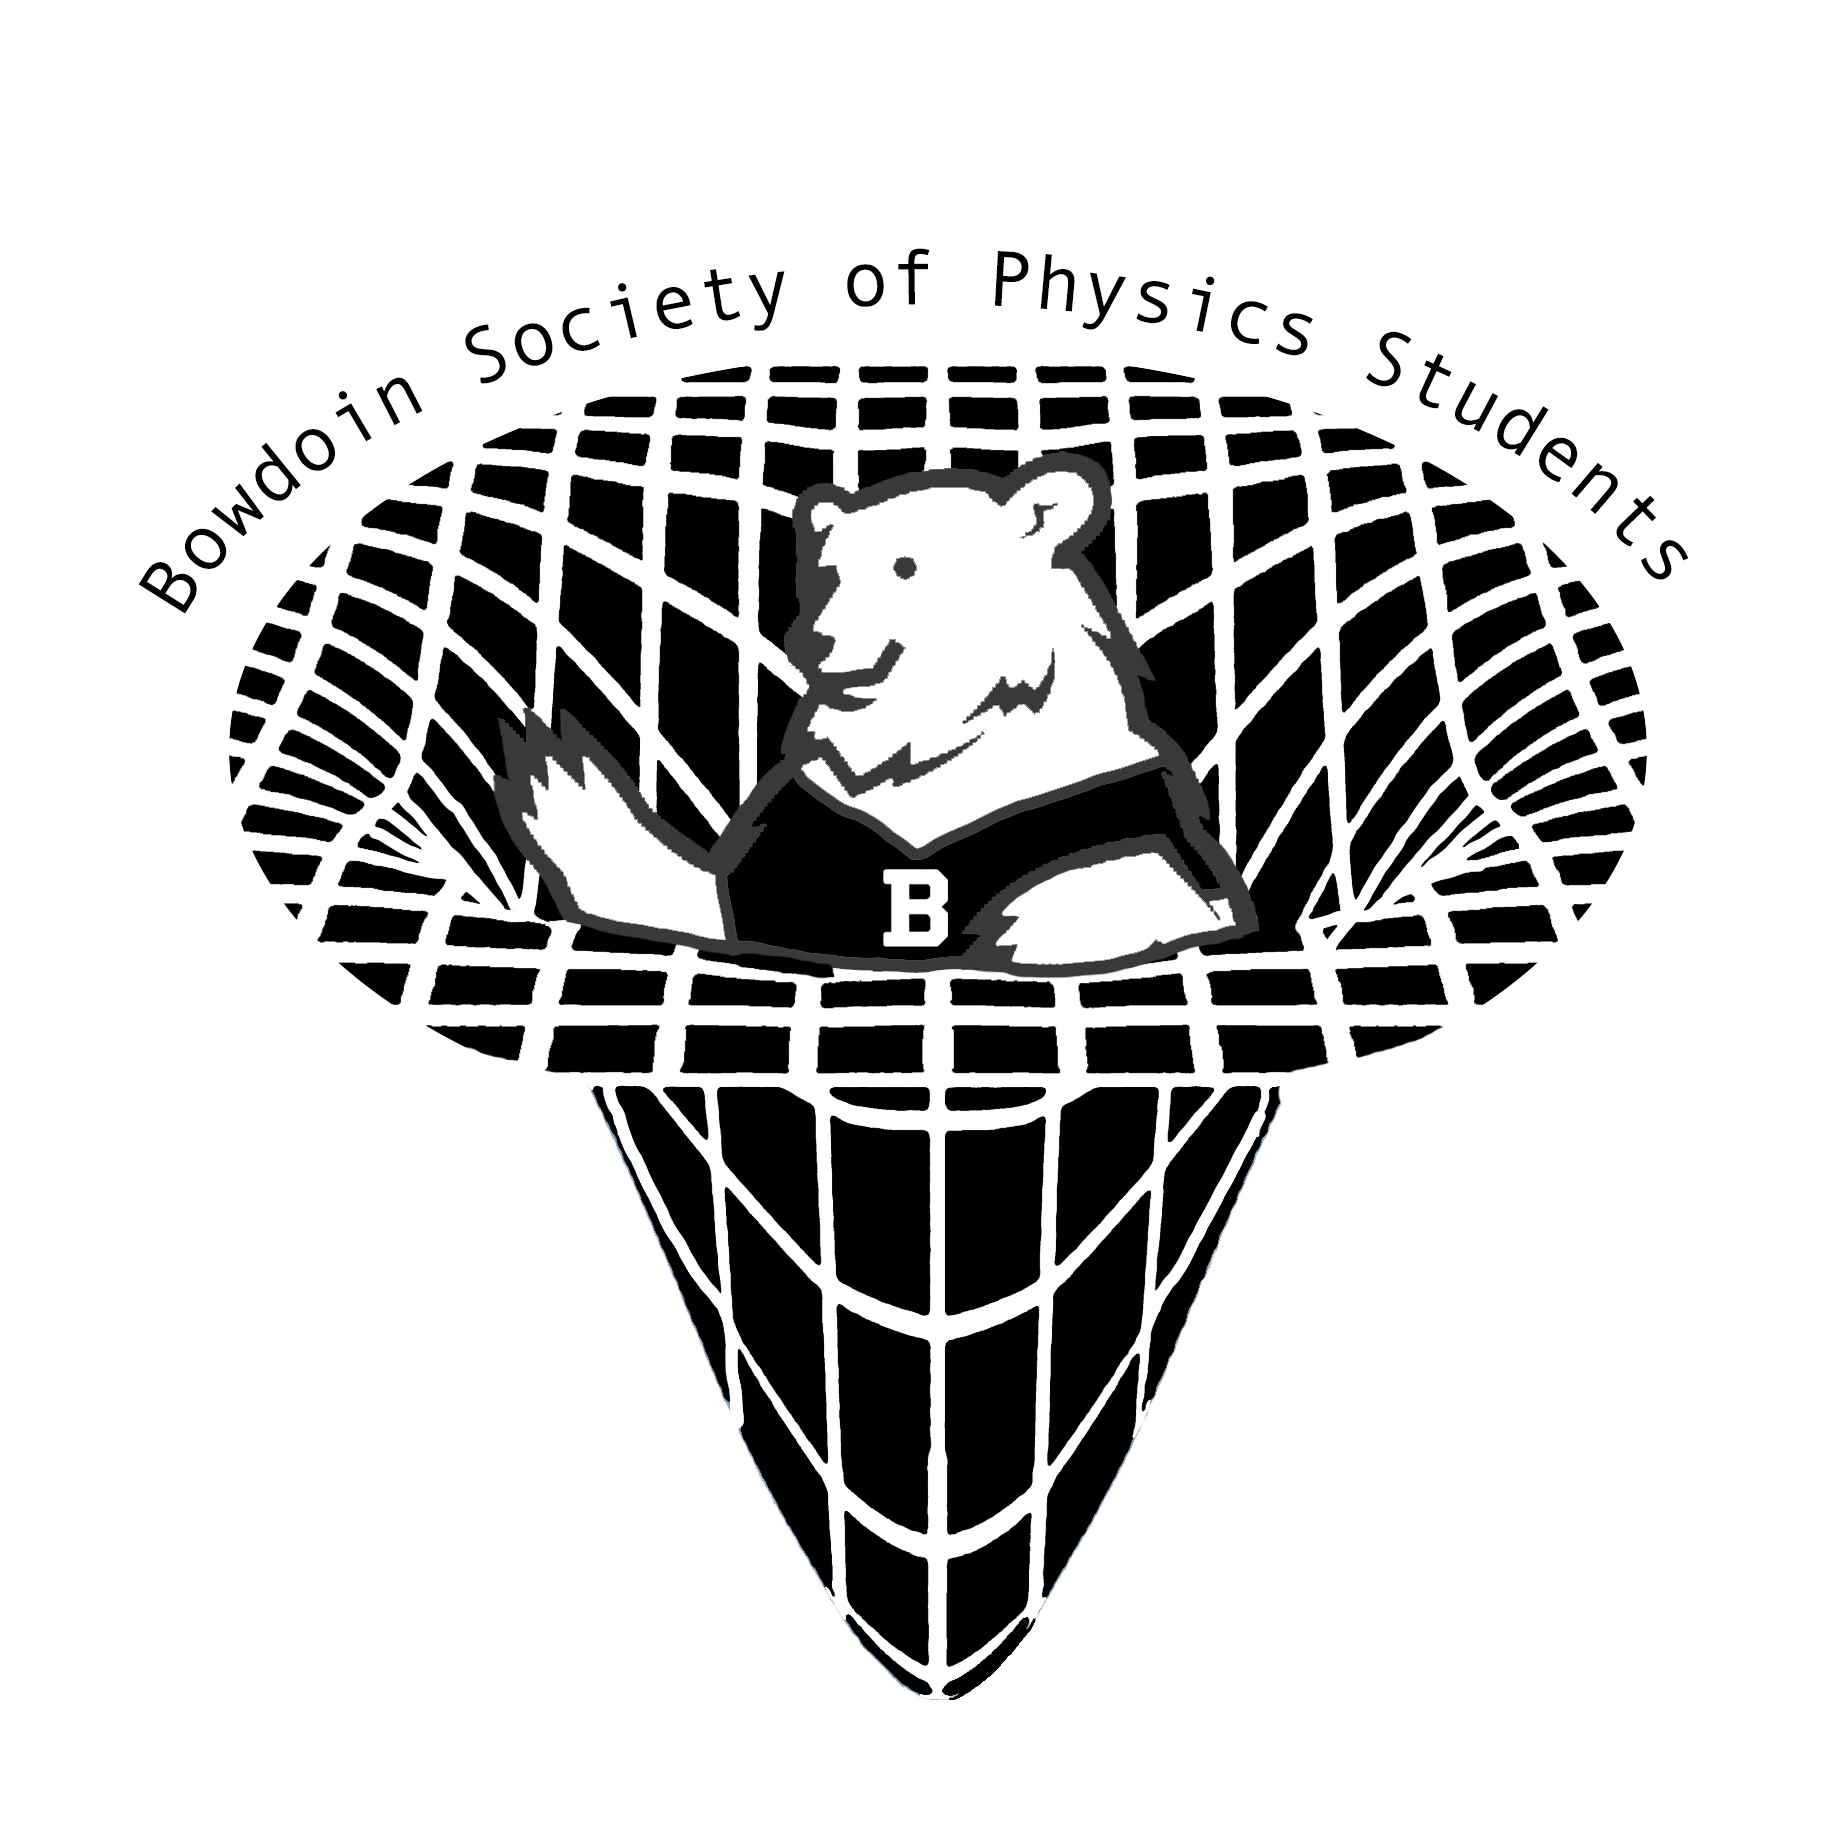 The logo of the Bowdoin Society of Physics Students.